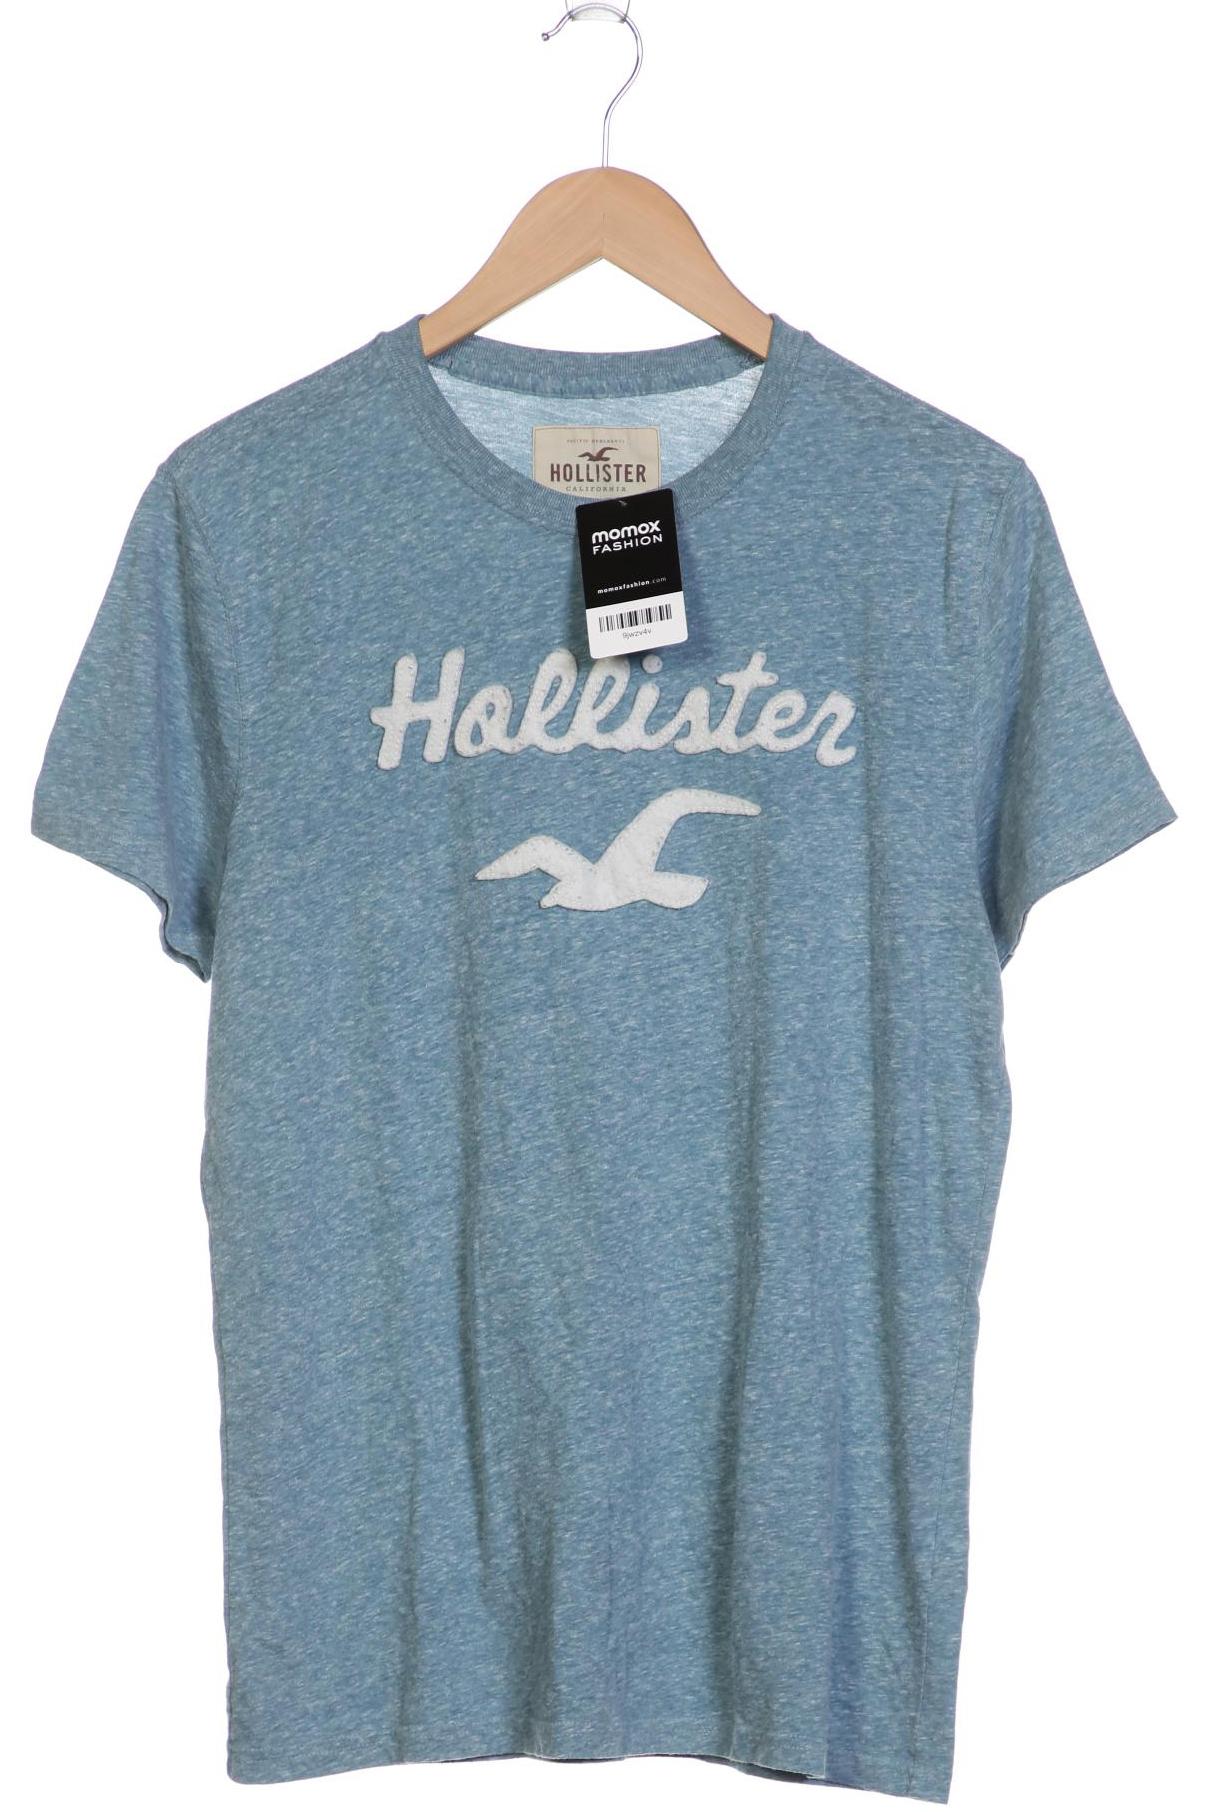 Hollister Herren T-Shirt, hellblau von Hollister